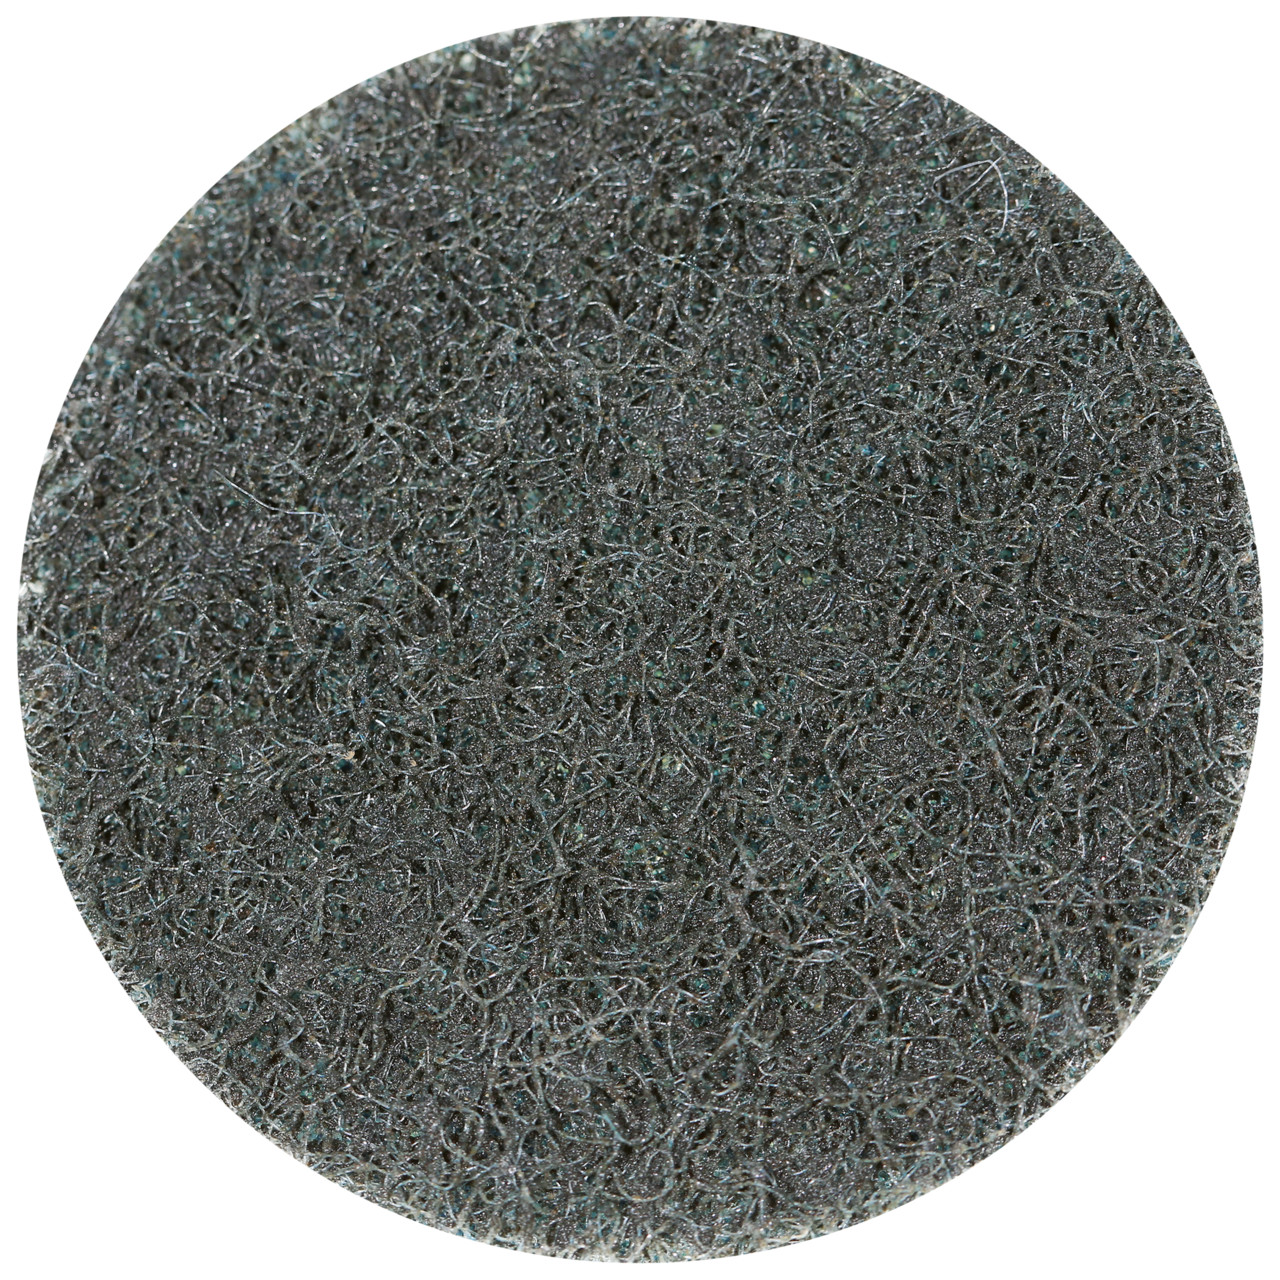 Tyrolit SCM QUICK CHANGE DISC Dimensione 75xR Per acciaio, acciaio inox, metalli non ferrosi, plastica e legno, EXTRA MEDIUM, forma: QDISC, Art. 34072701